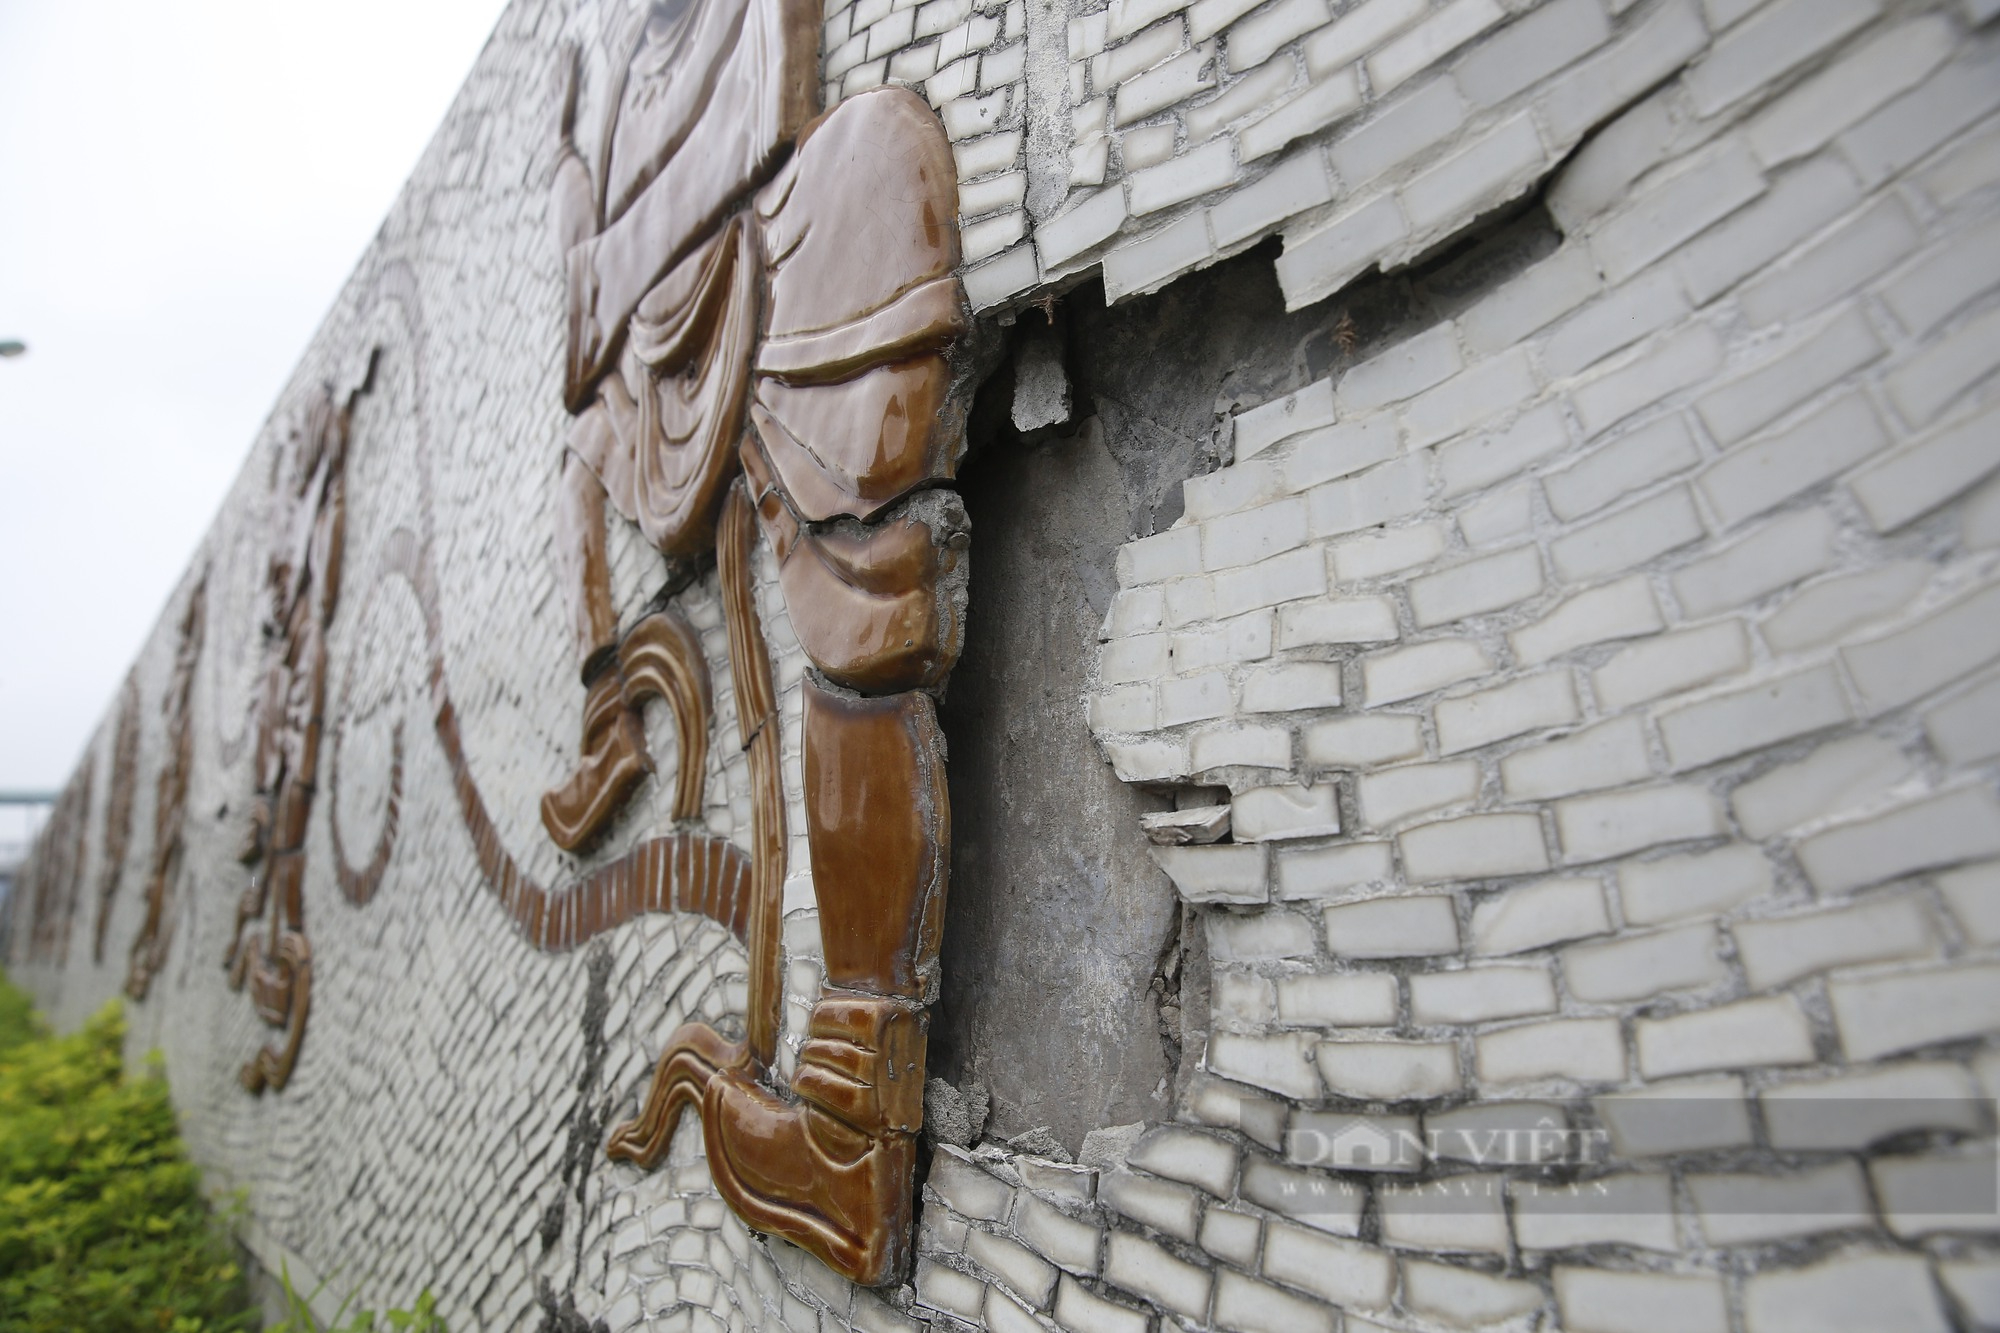 Nhiều không gian văn hóa nghệ thuật tại Hà Nội bị bôi bẩn, xuống cấp nghiêm trọng - Ảnh 12.